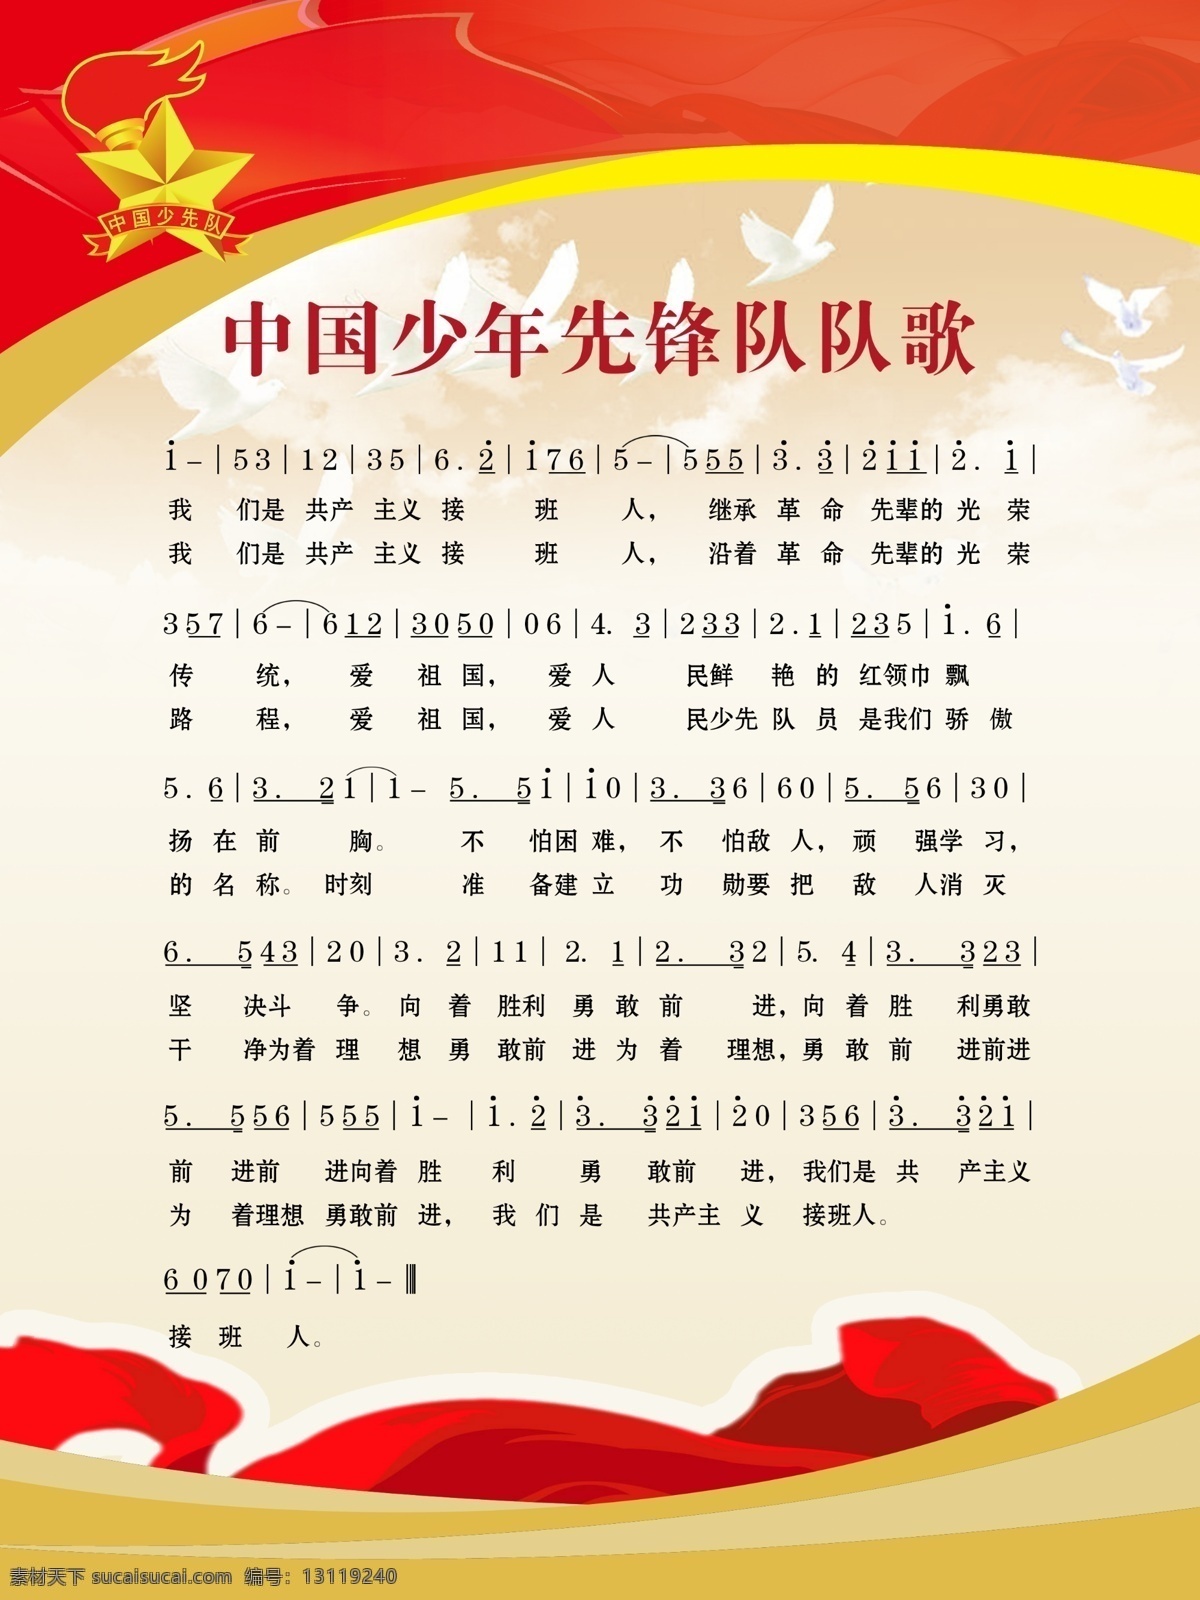 中国少年先锋队 歌 谱子 歌曲 分层谱曲 分层 源文件